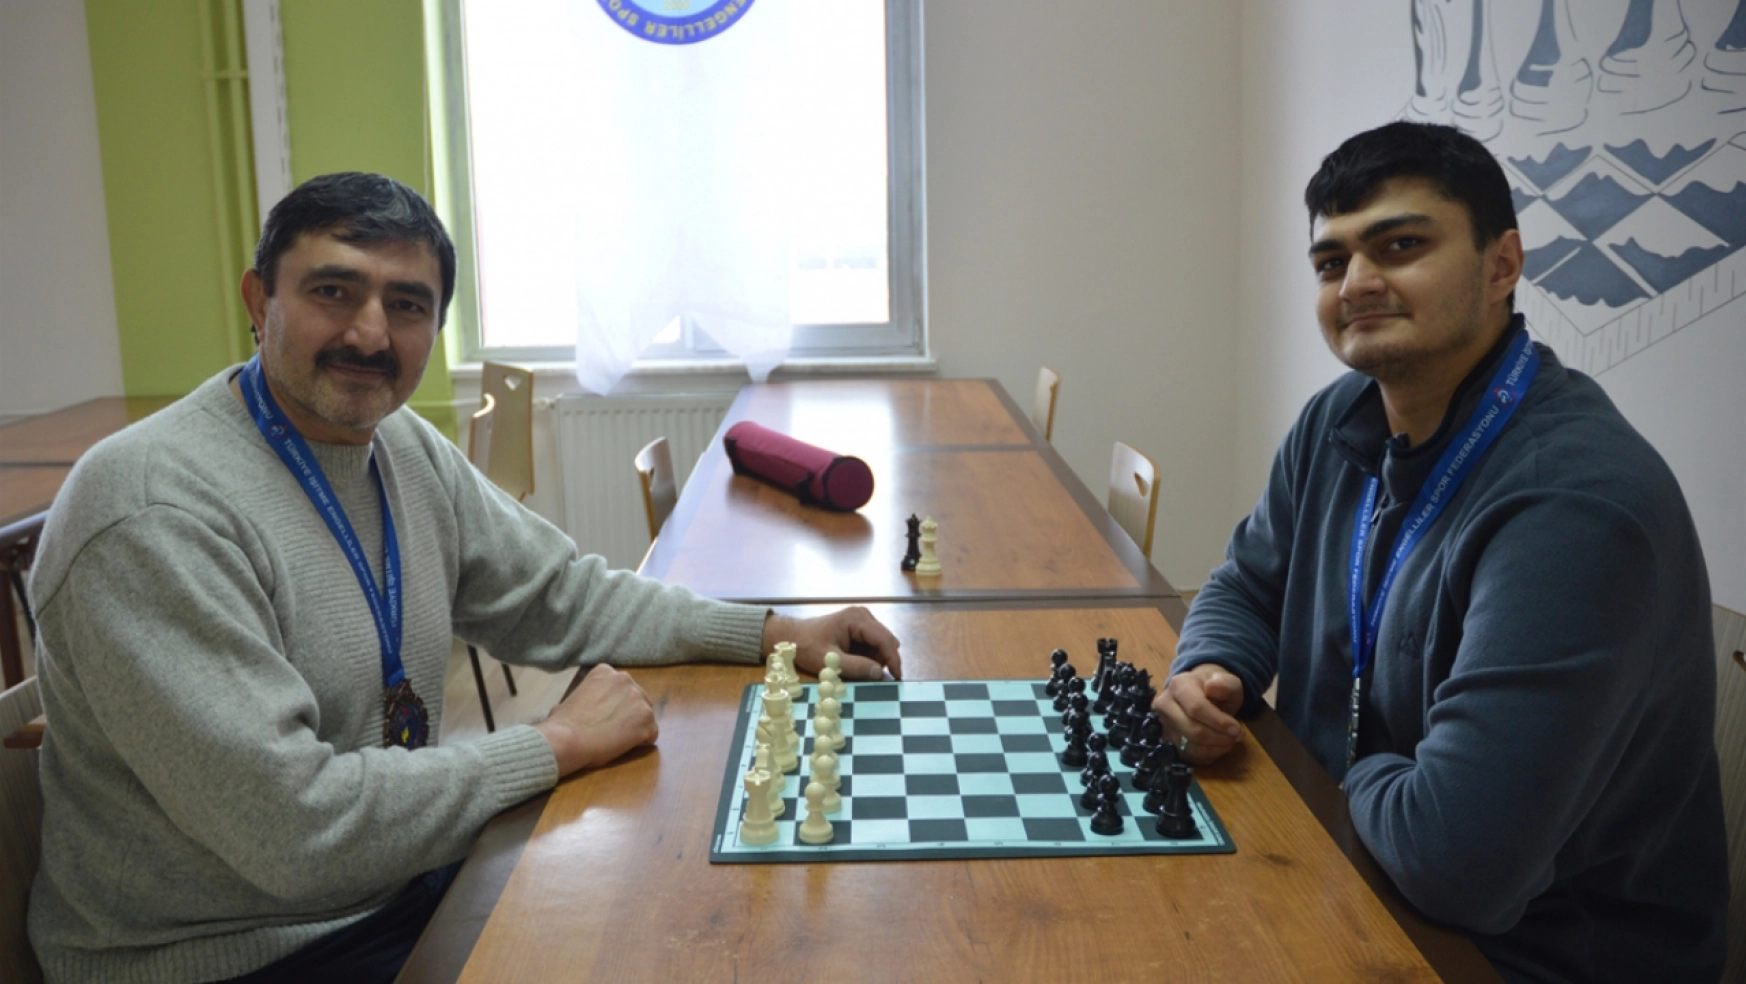 Erzurum'da düzenlenen 'İşitme Engelliler Türkiye Satranç Şampiyonası' tamamlandı